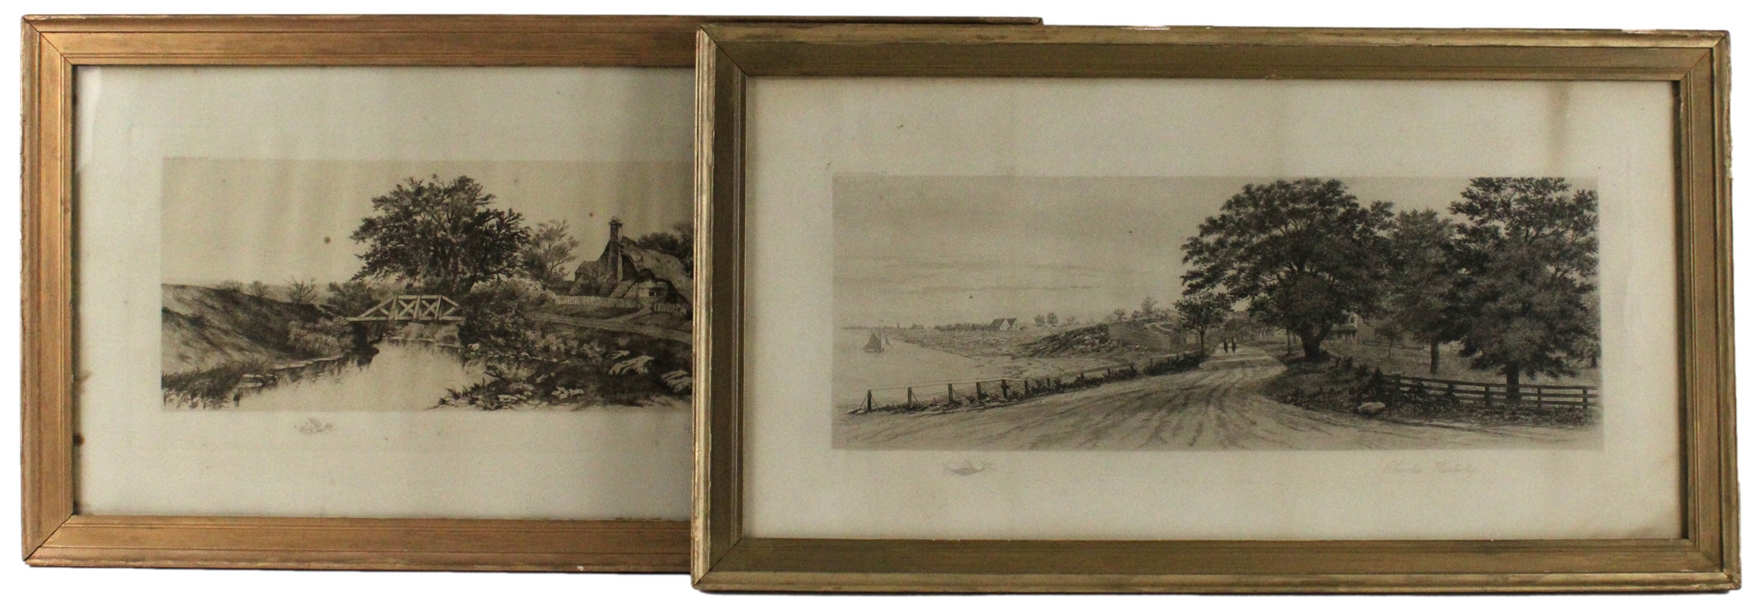 Two Pastoral Landscape Prints, Westerley & Gondel